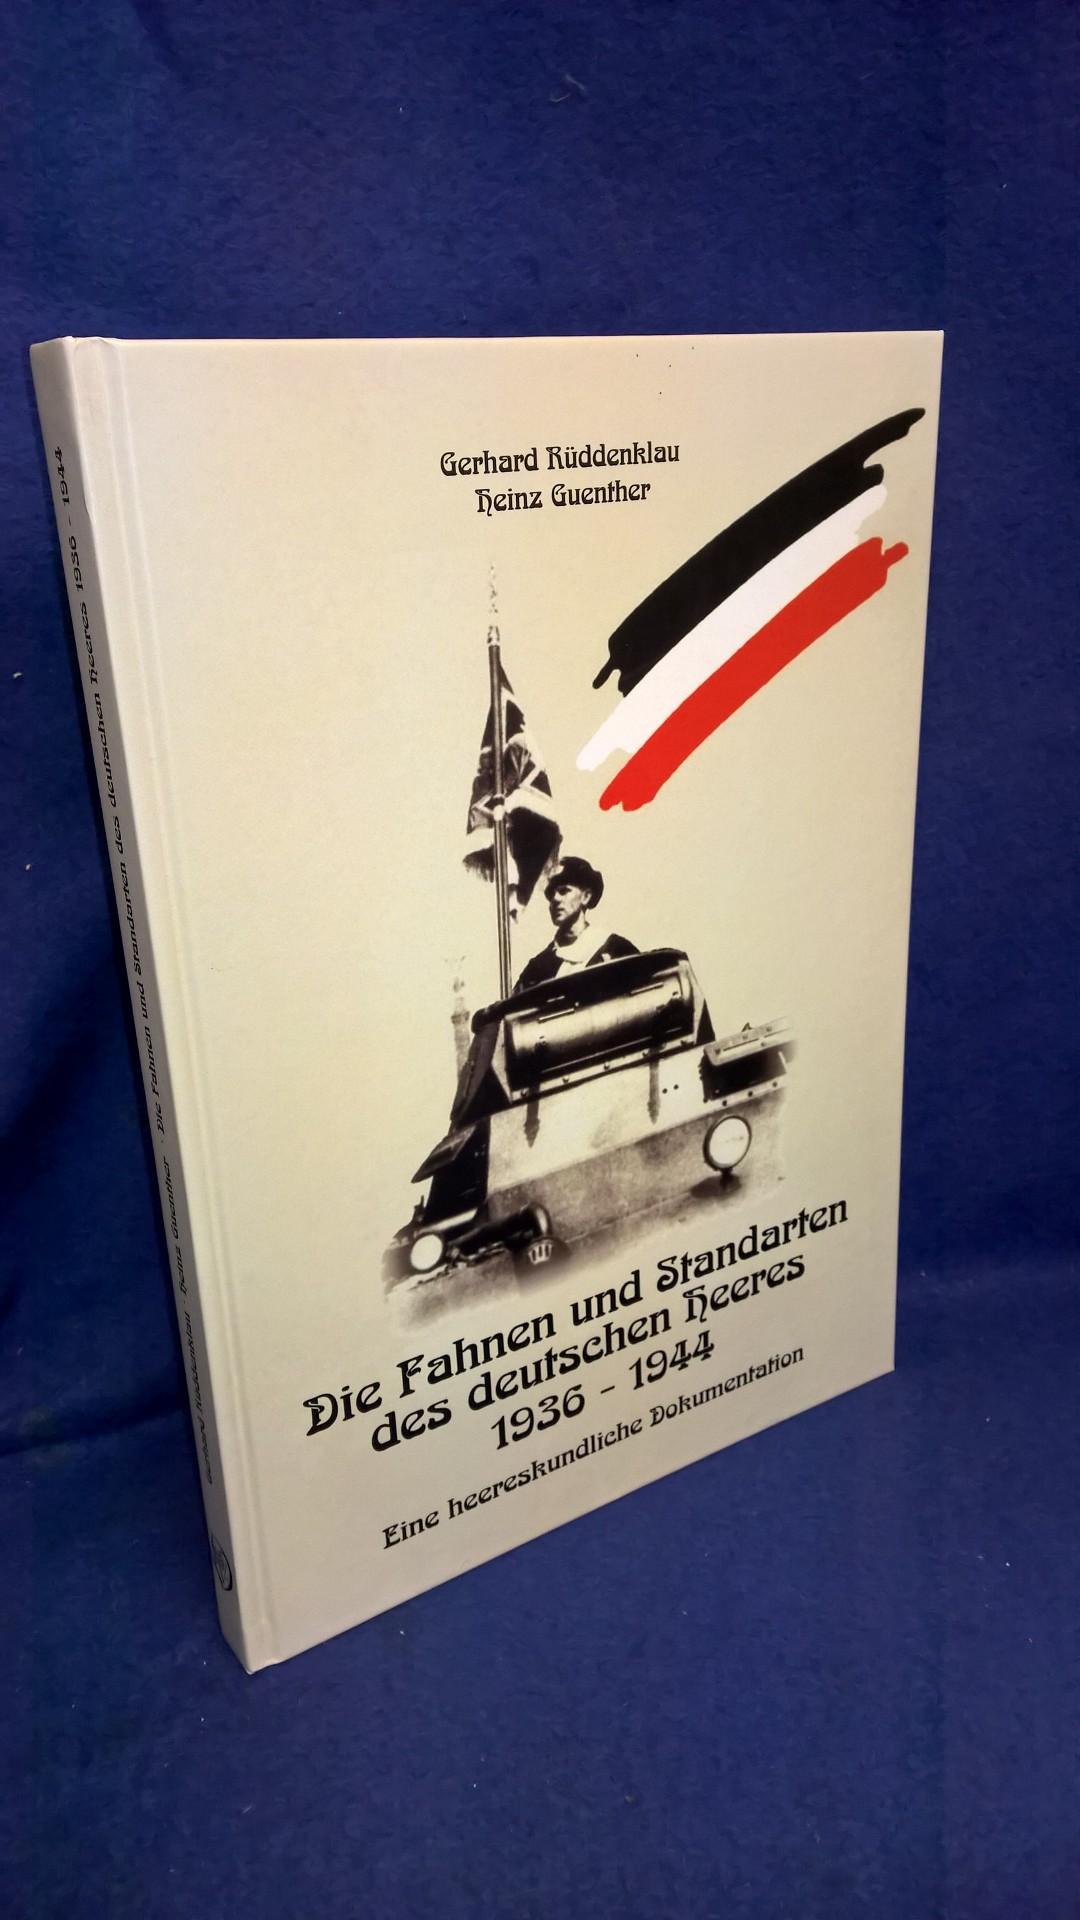 Die Fahnen und Standarten des deutschen Heeres 1936-1944: Eine heereskundliche Dokumentation